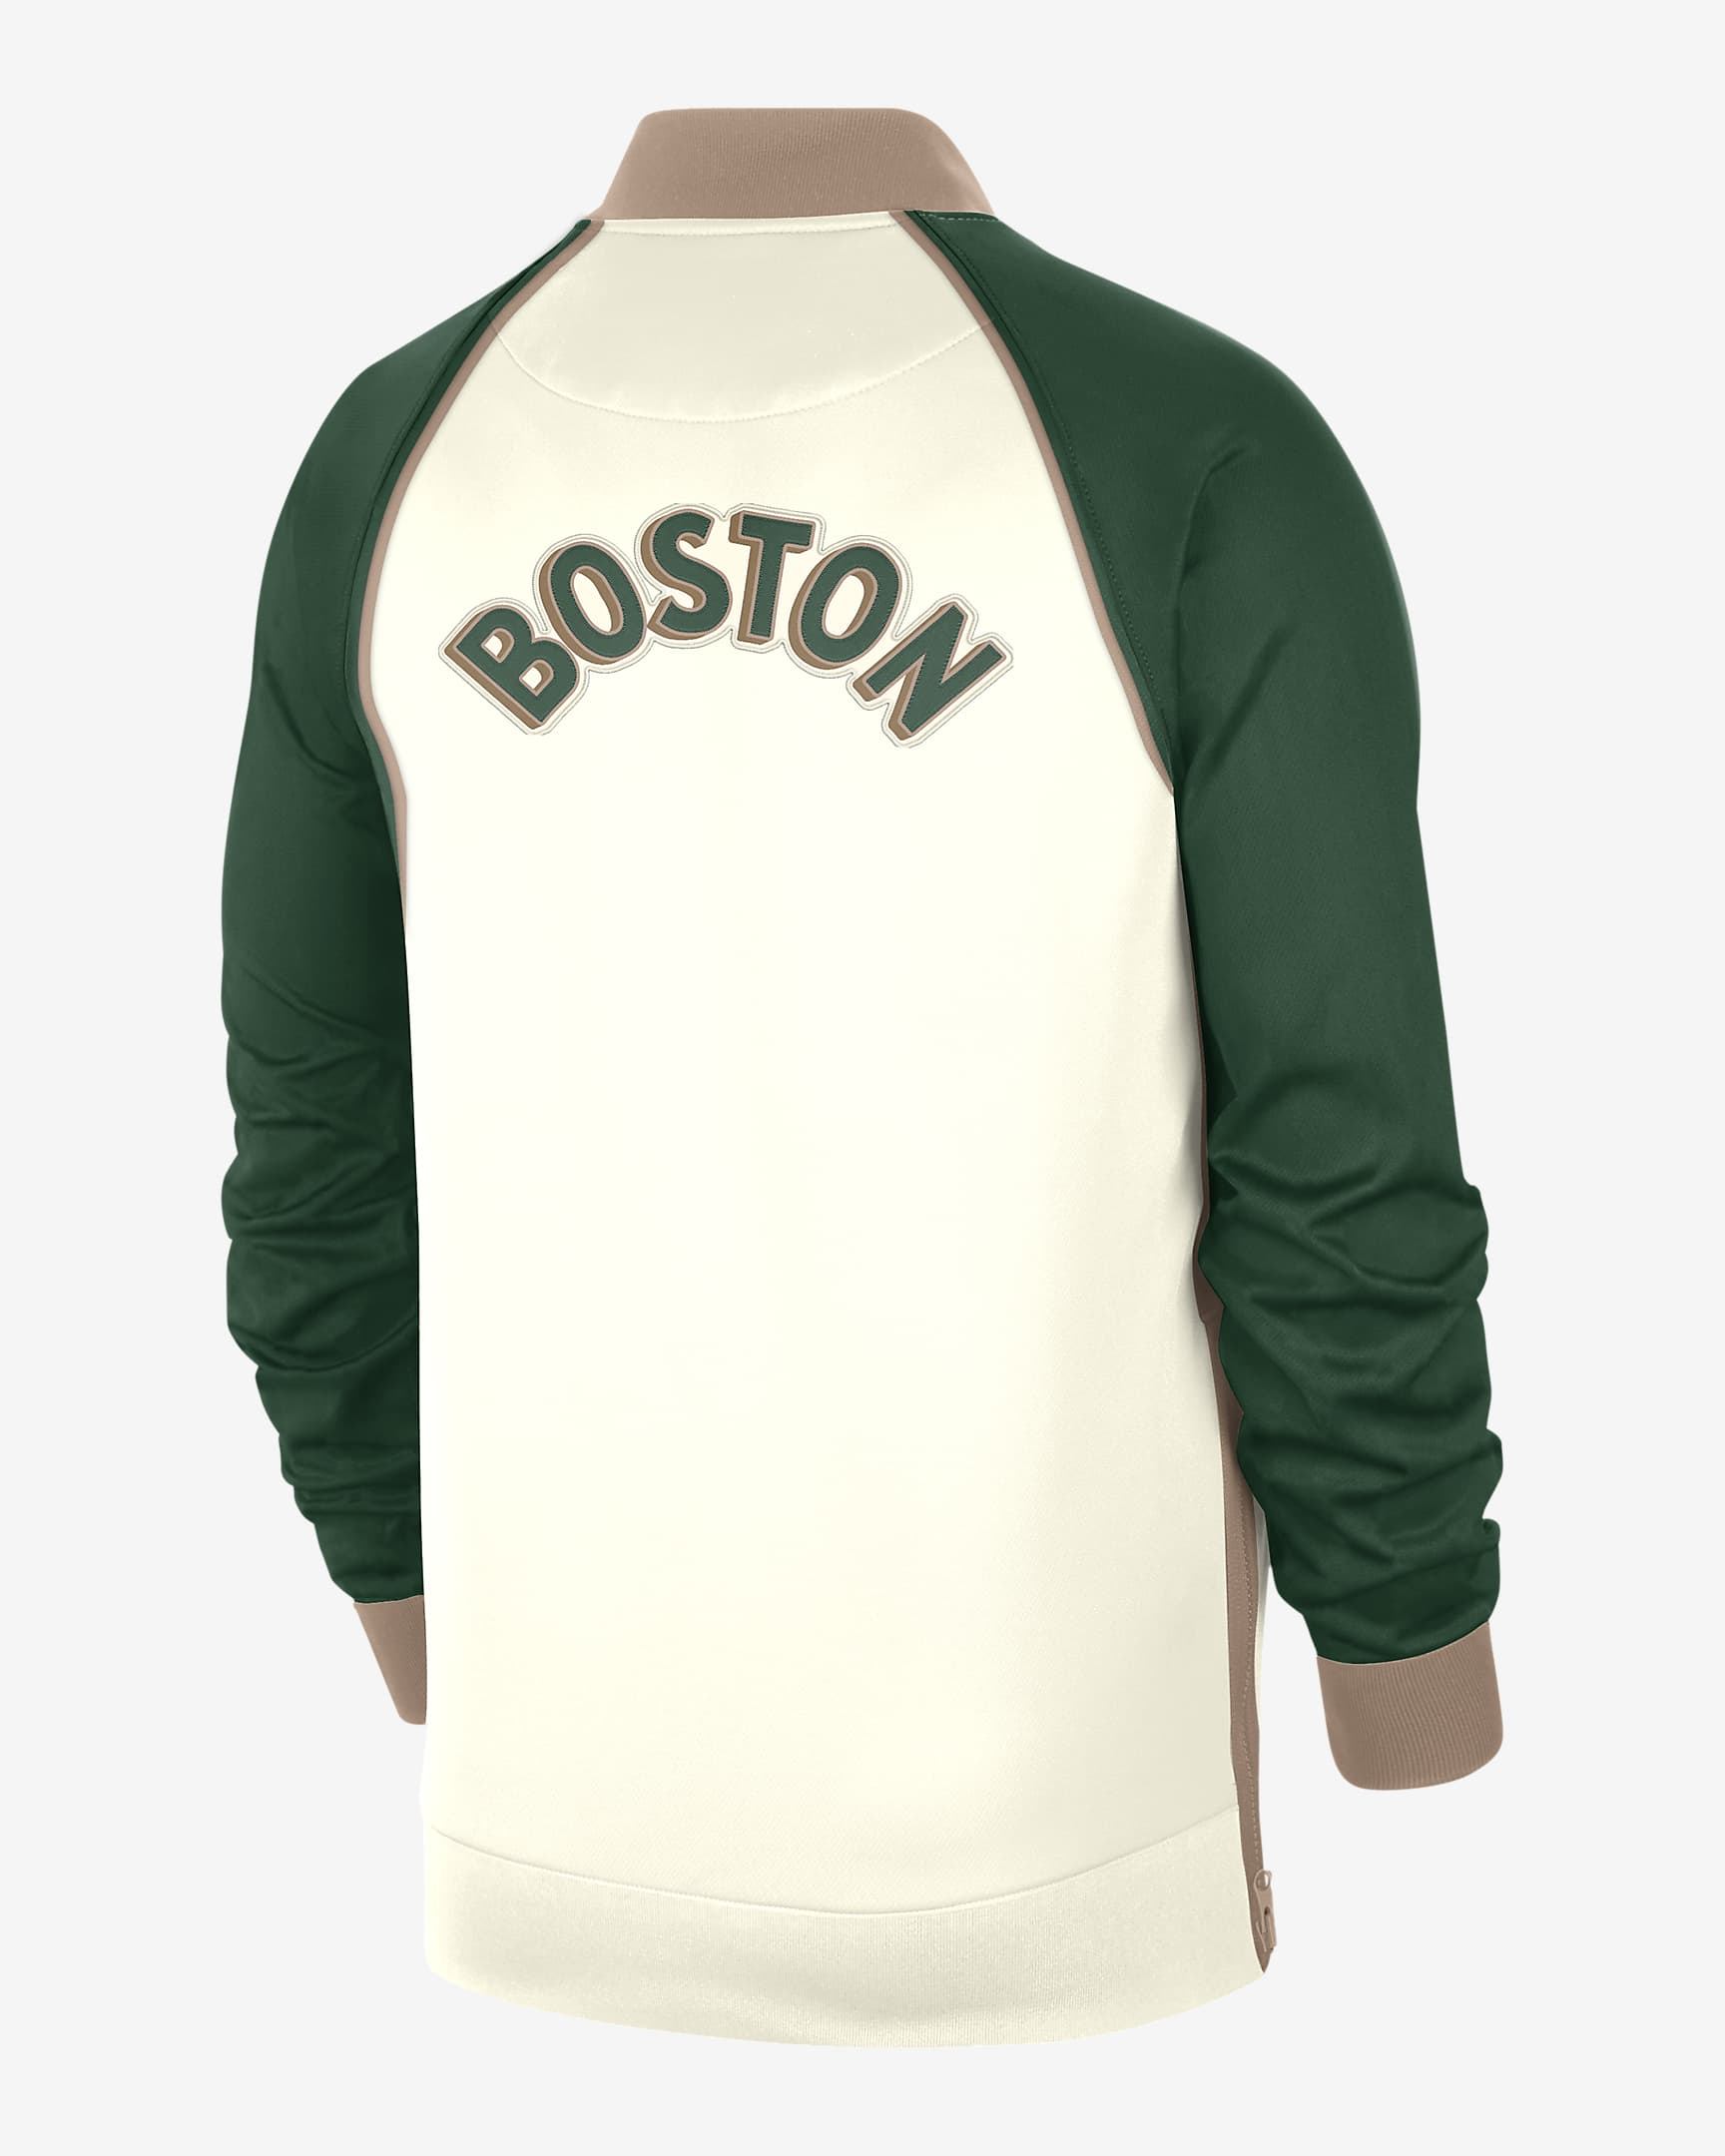 Boston Celtics Showtime City Edition Men's Nike Dri-FIT Full-Zip Long ...